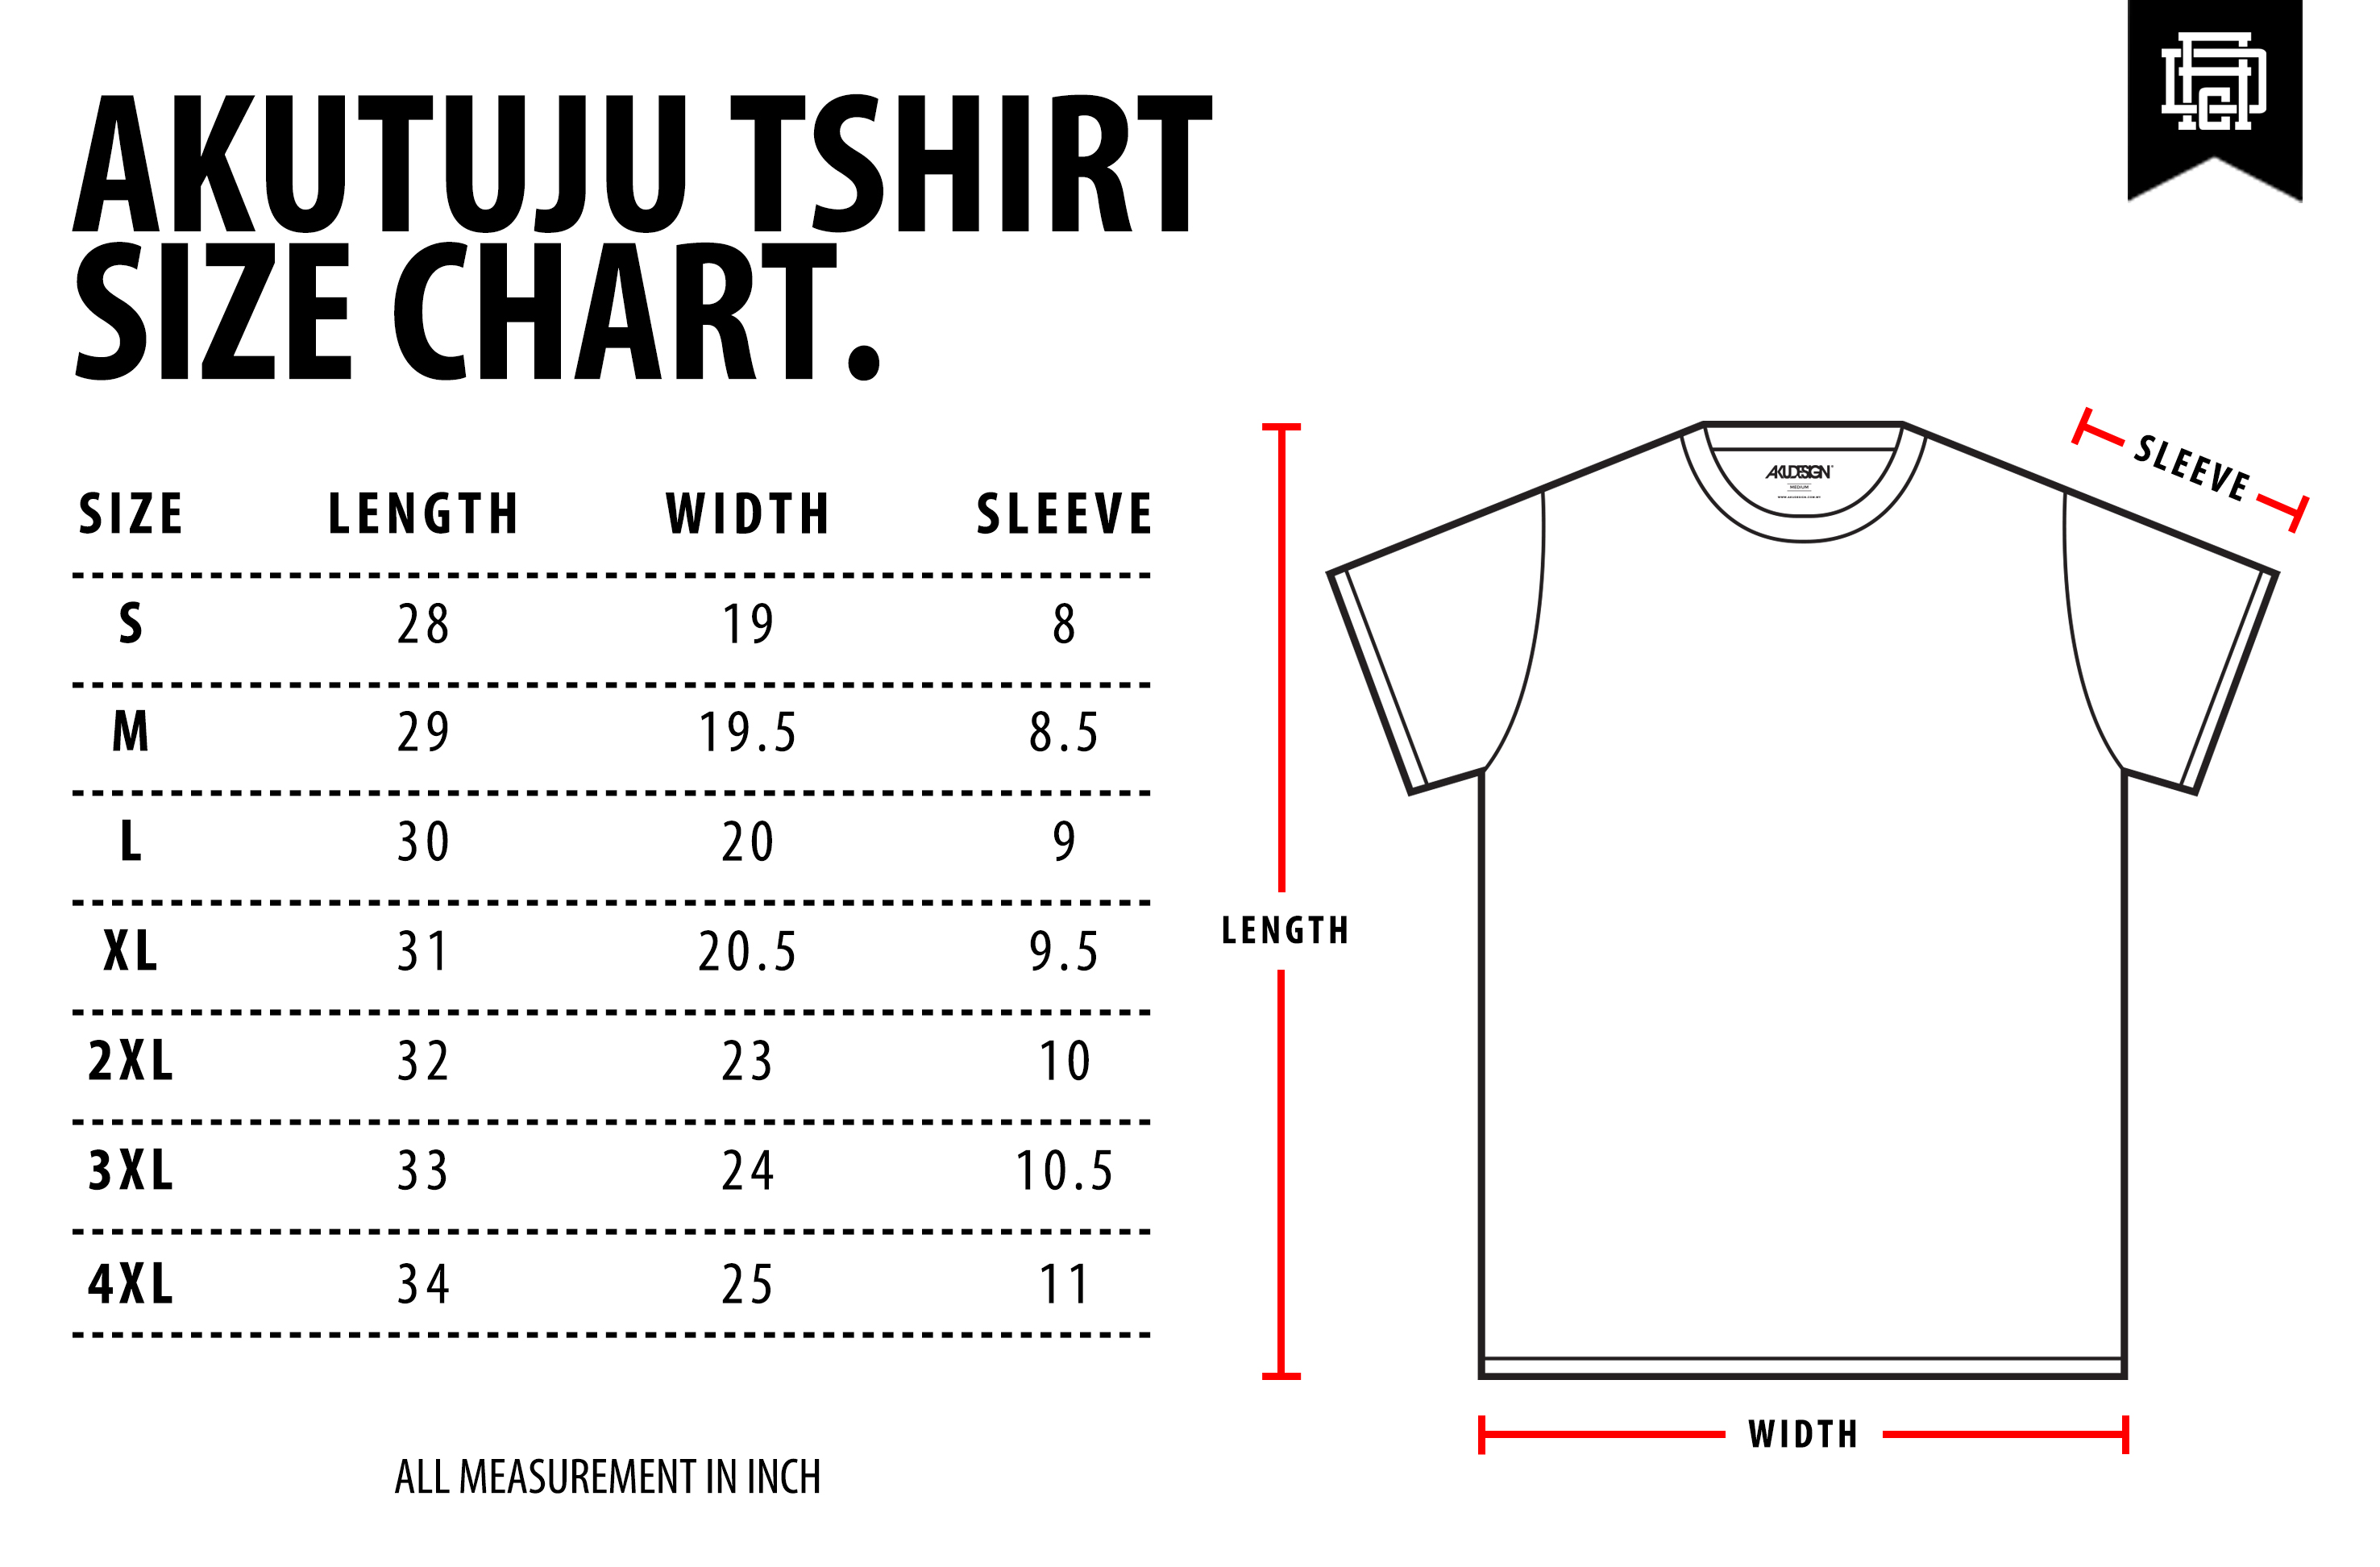 AkuTuju Tshirt Size Chart - WF